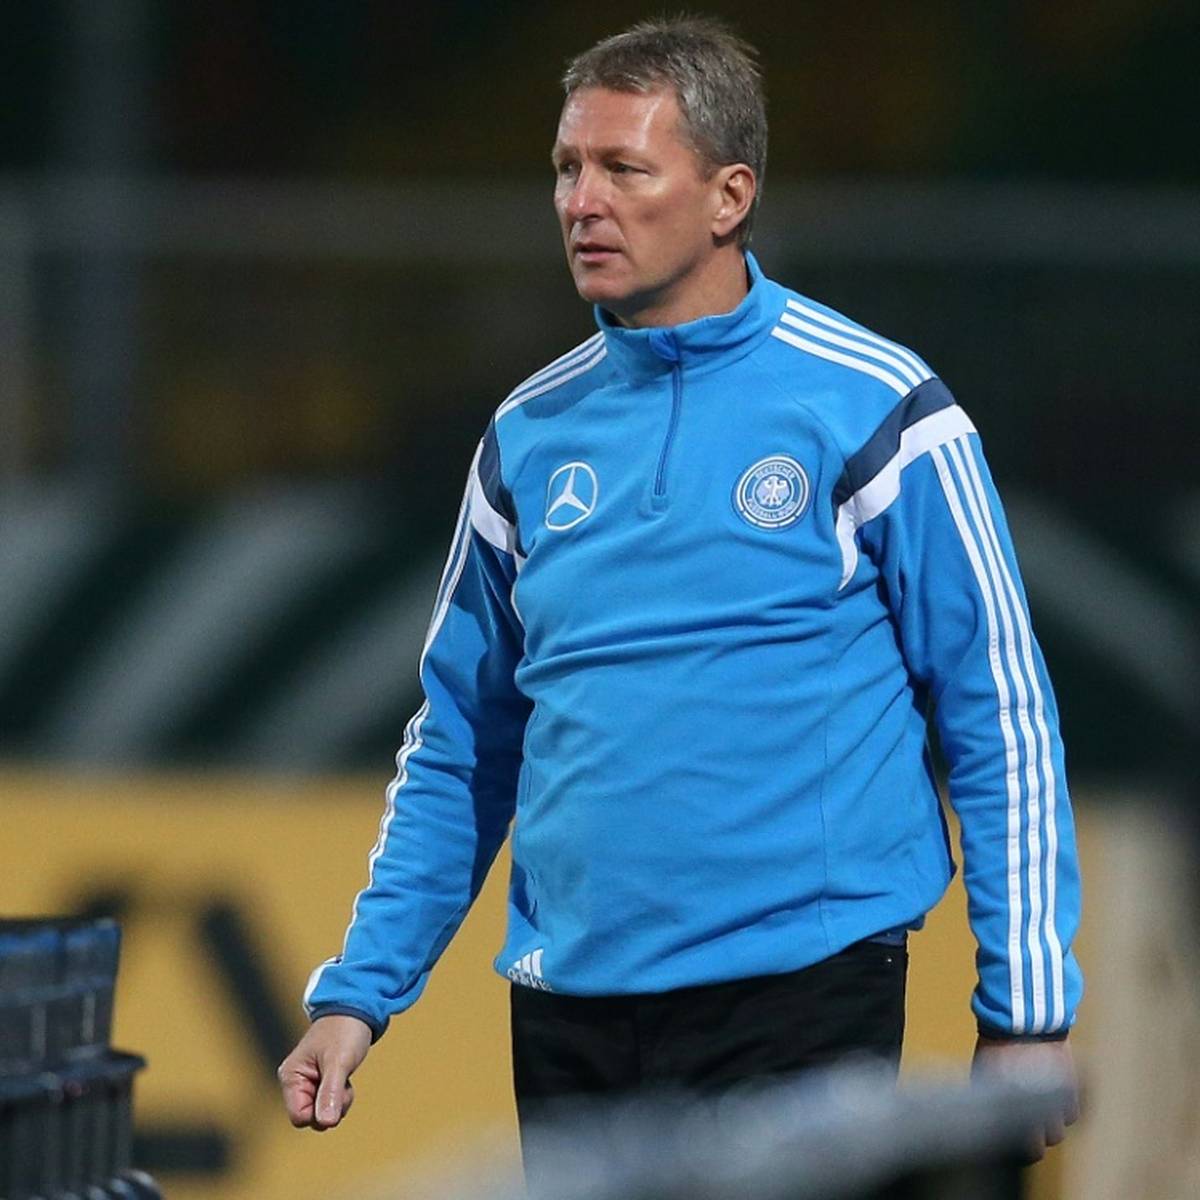 Der frühere DFB-Chefausbilder Frank Wormuth wird zur kommenden Saison Trainer des niederländischen Erstligisten FC Groningen.